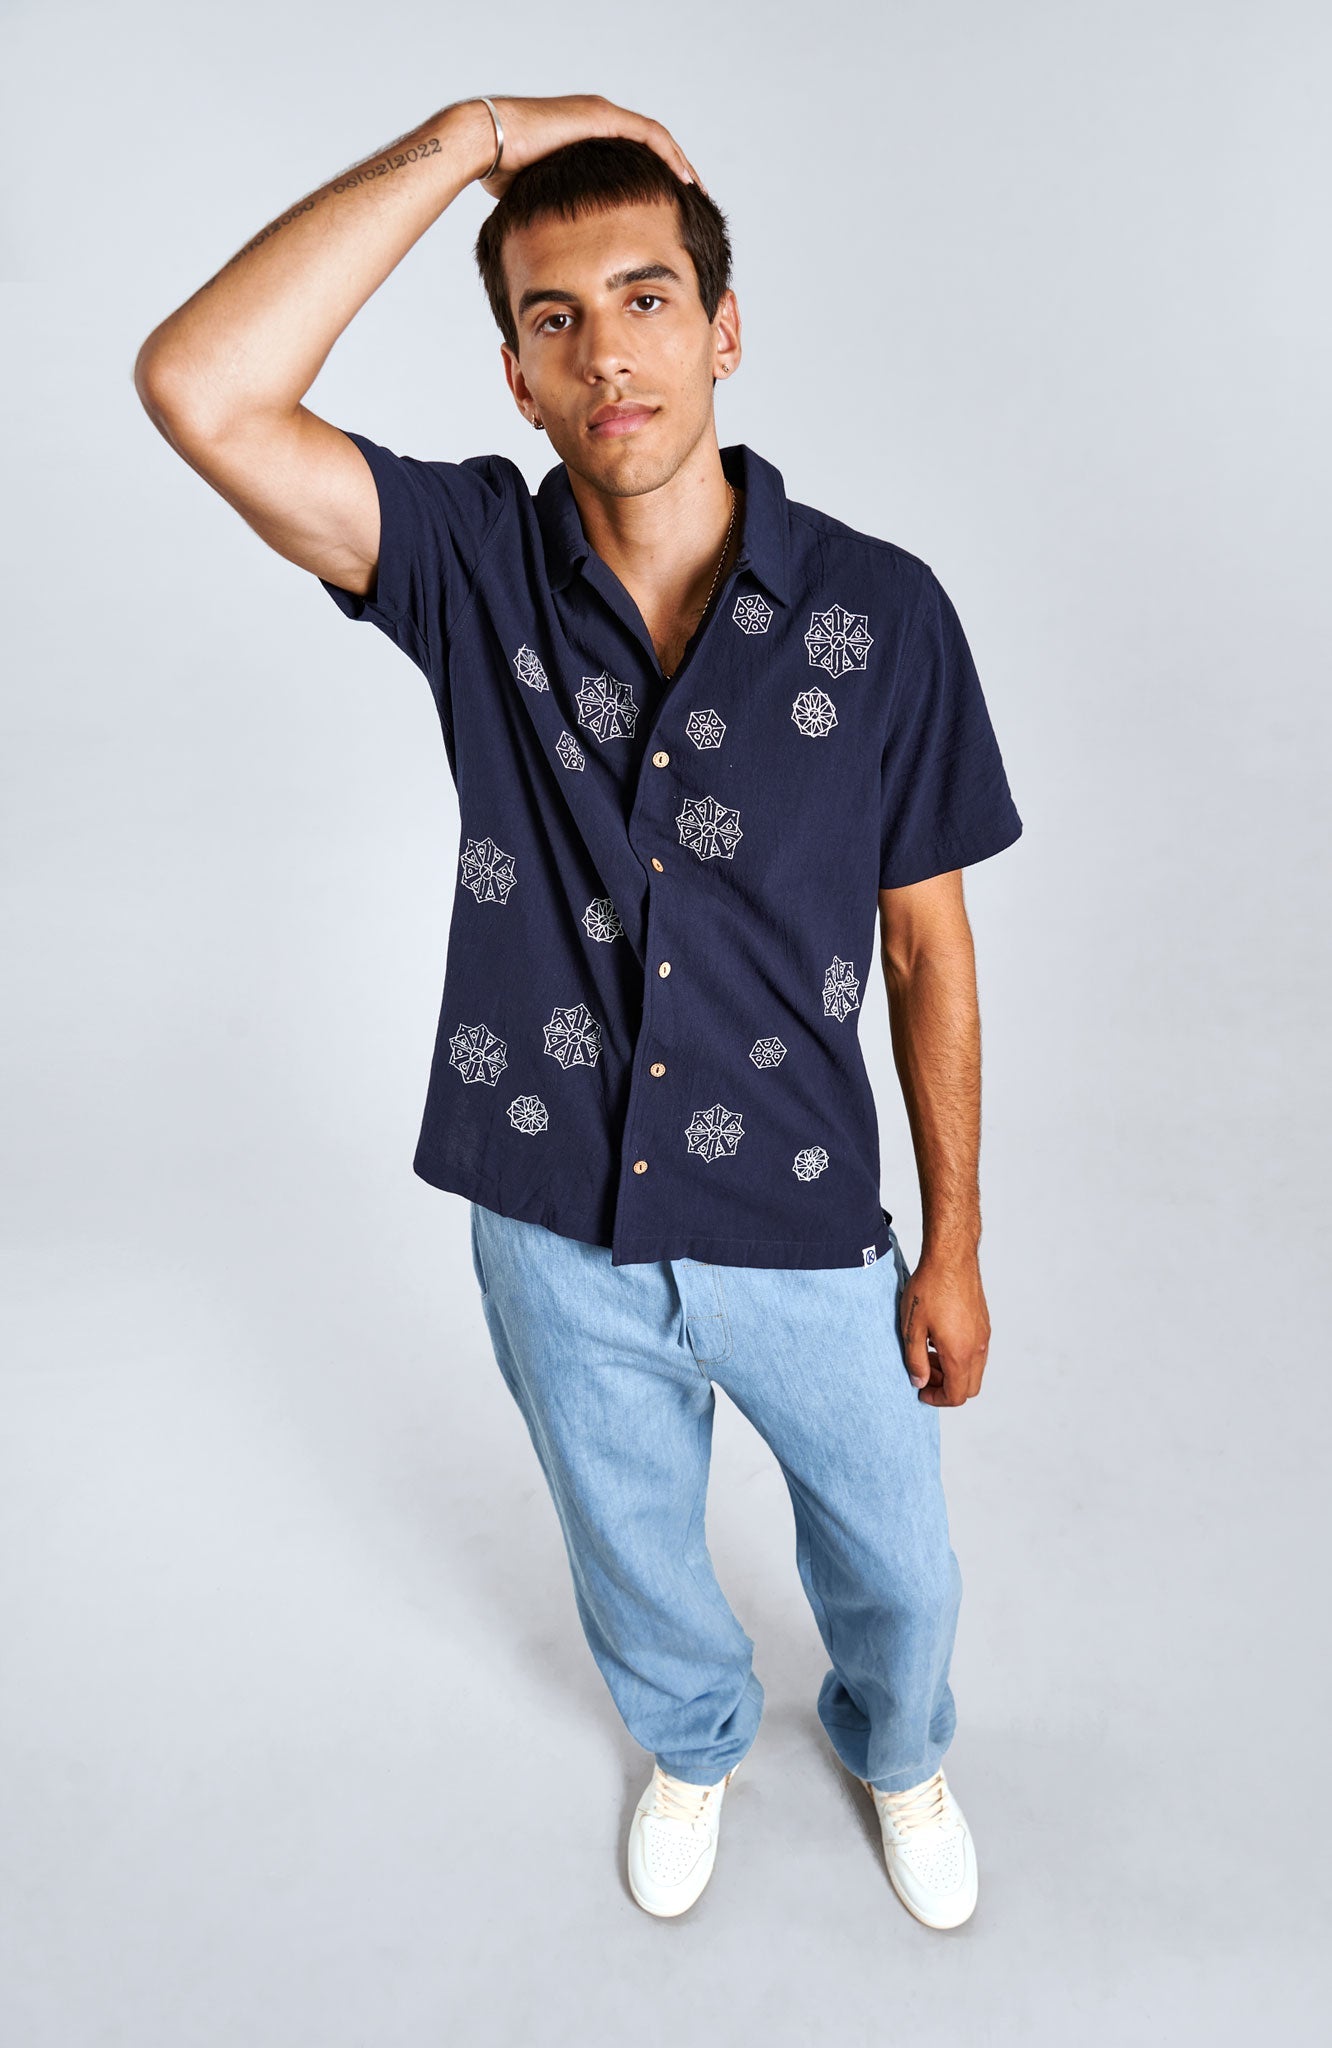 Blaues Hemd Spindrift Embroidery aus 100% Baumwolle von Komodo